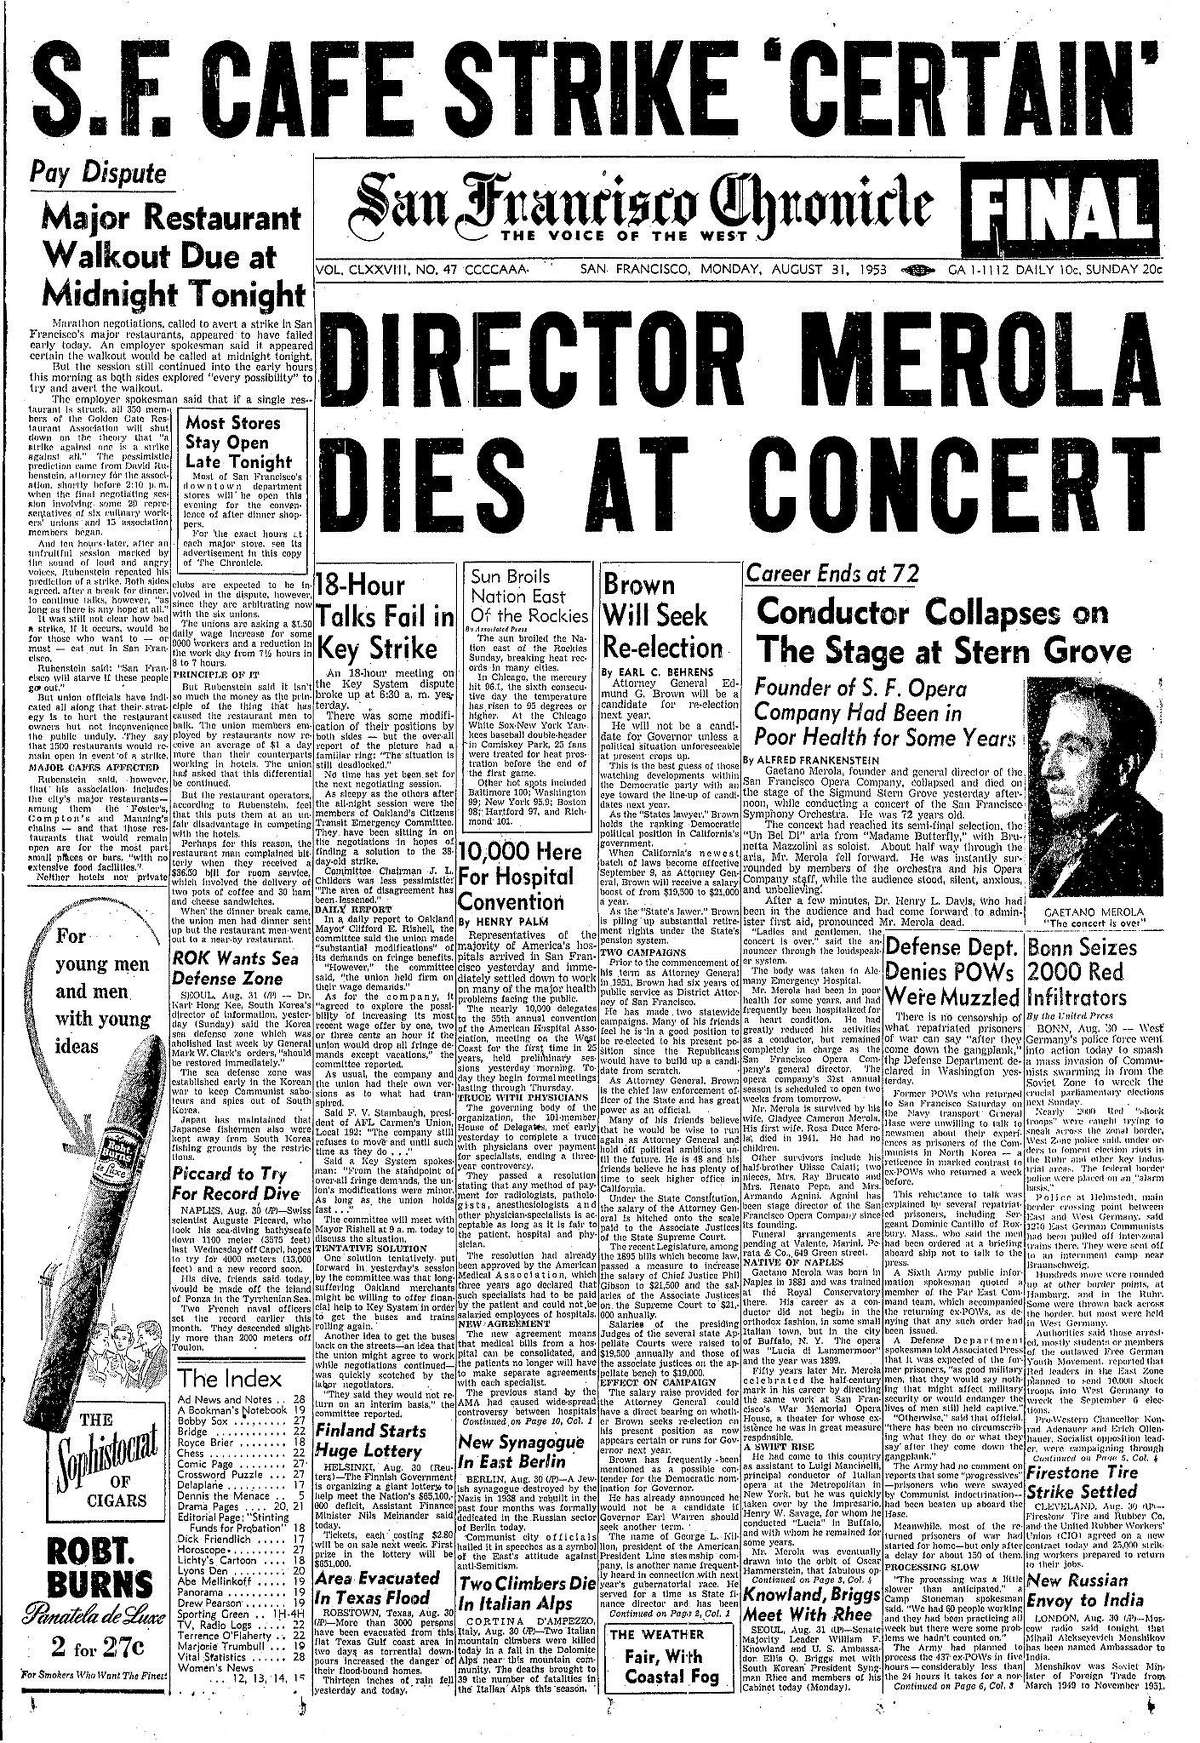 历史编年史头版1953年8月31日旧金山歌剧院指挥在西格蒙德斯特恩公园的指挥台上昏倒